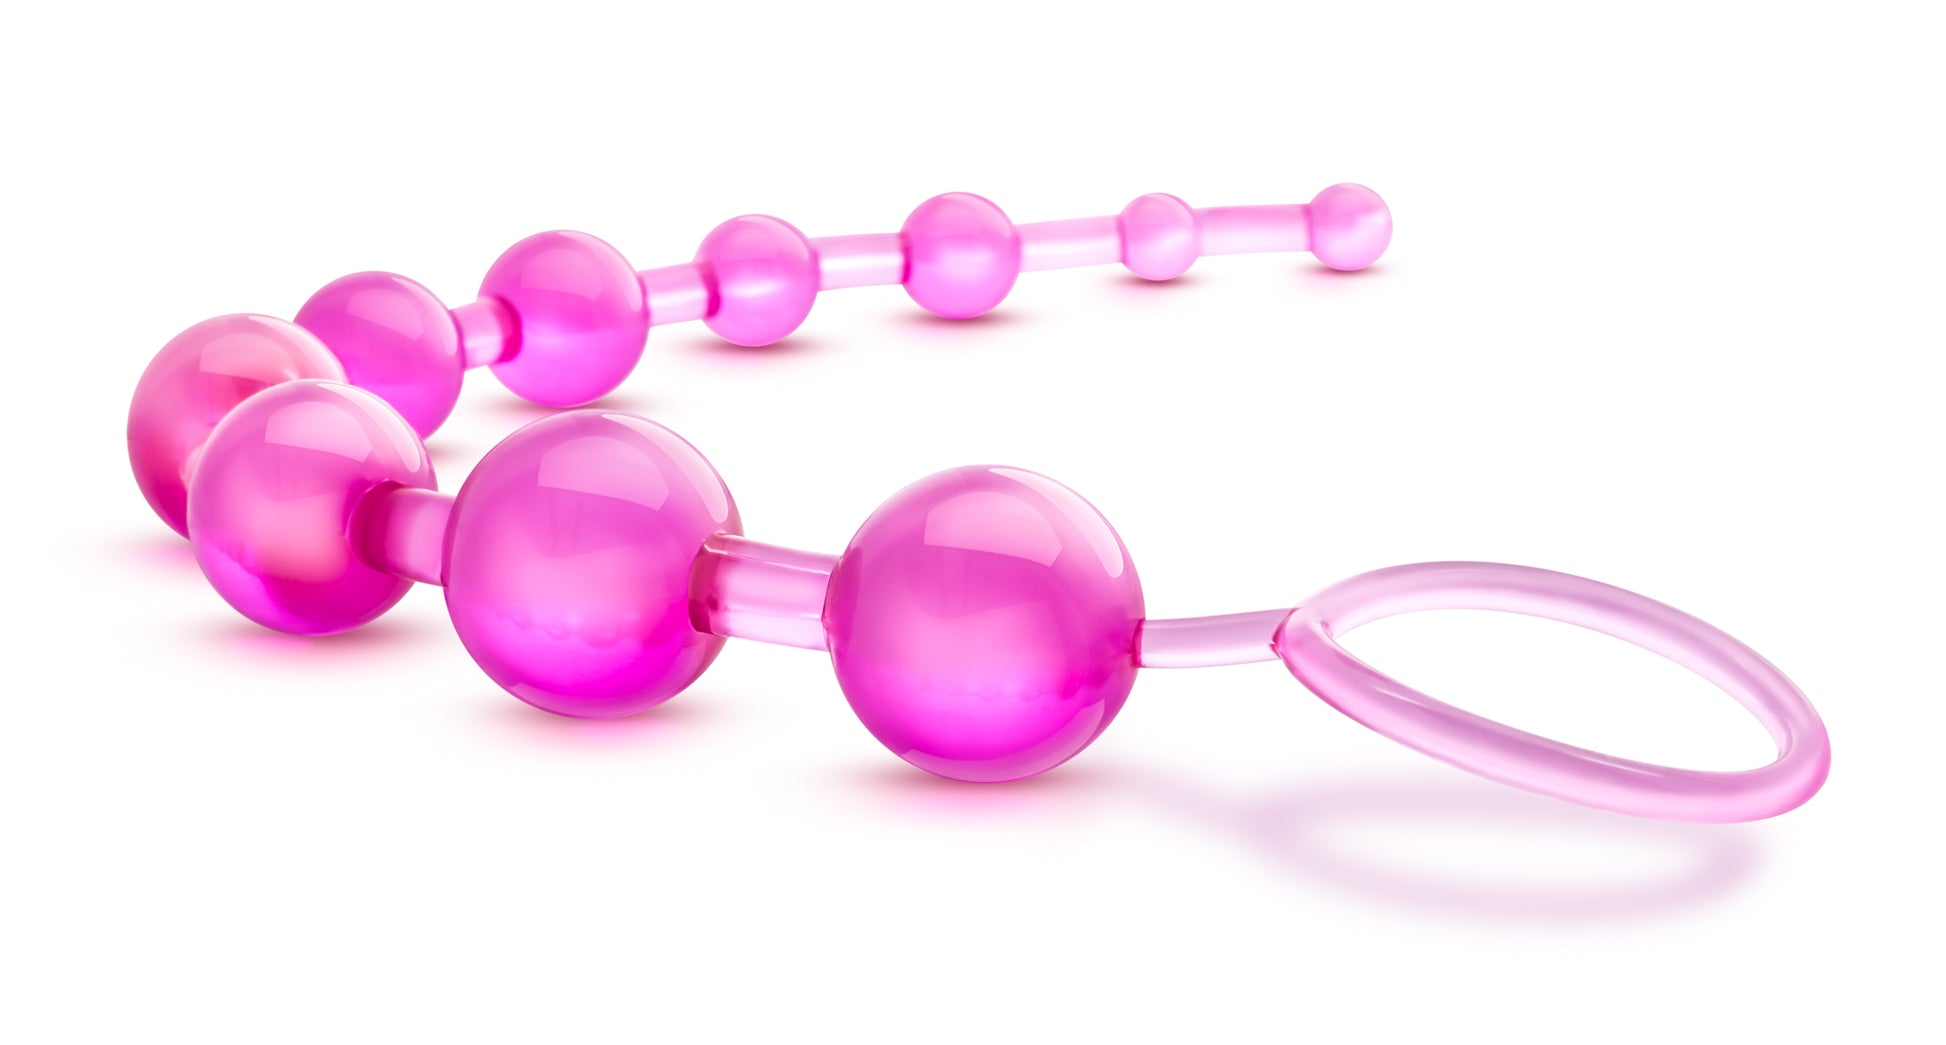 Sassy 10 Anal Beads - Pink BL-23110